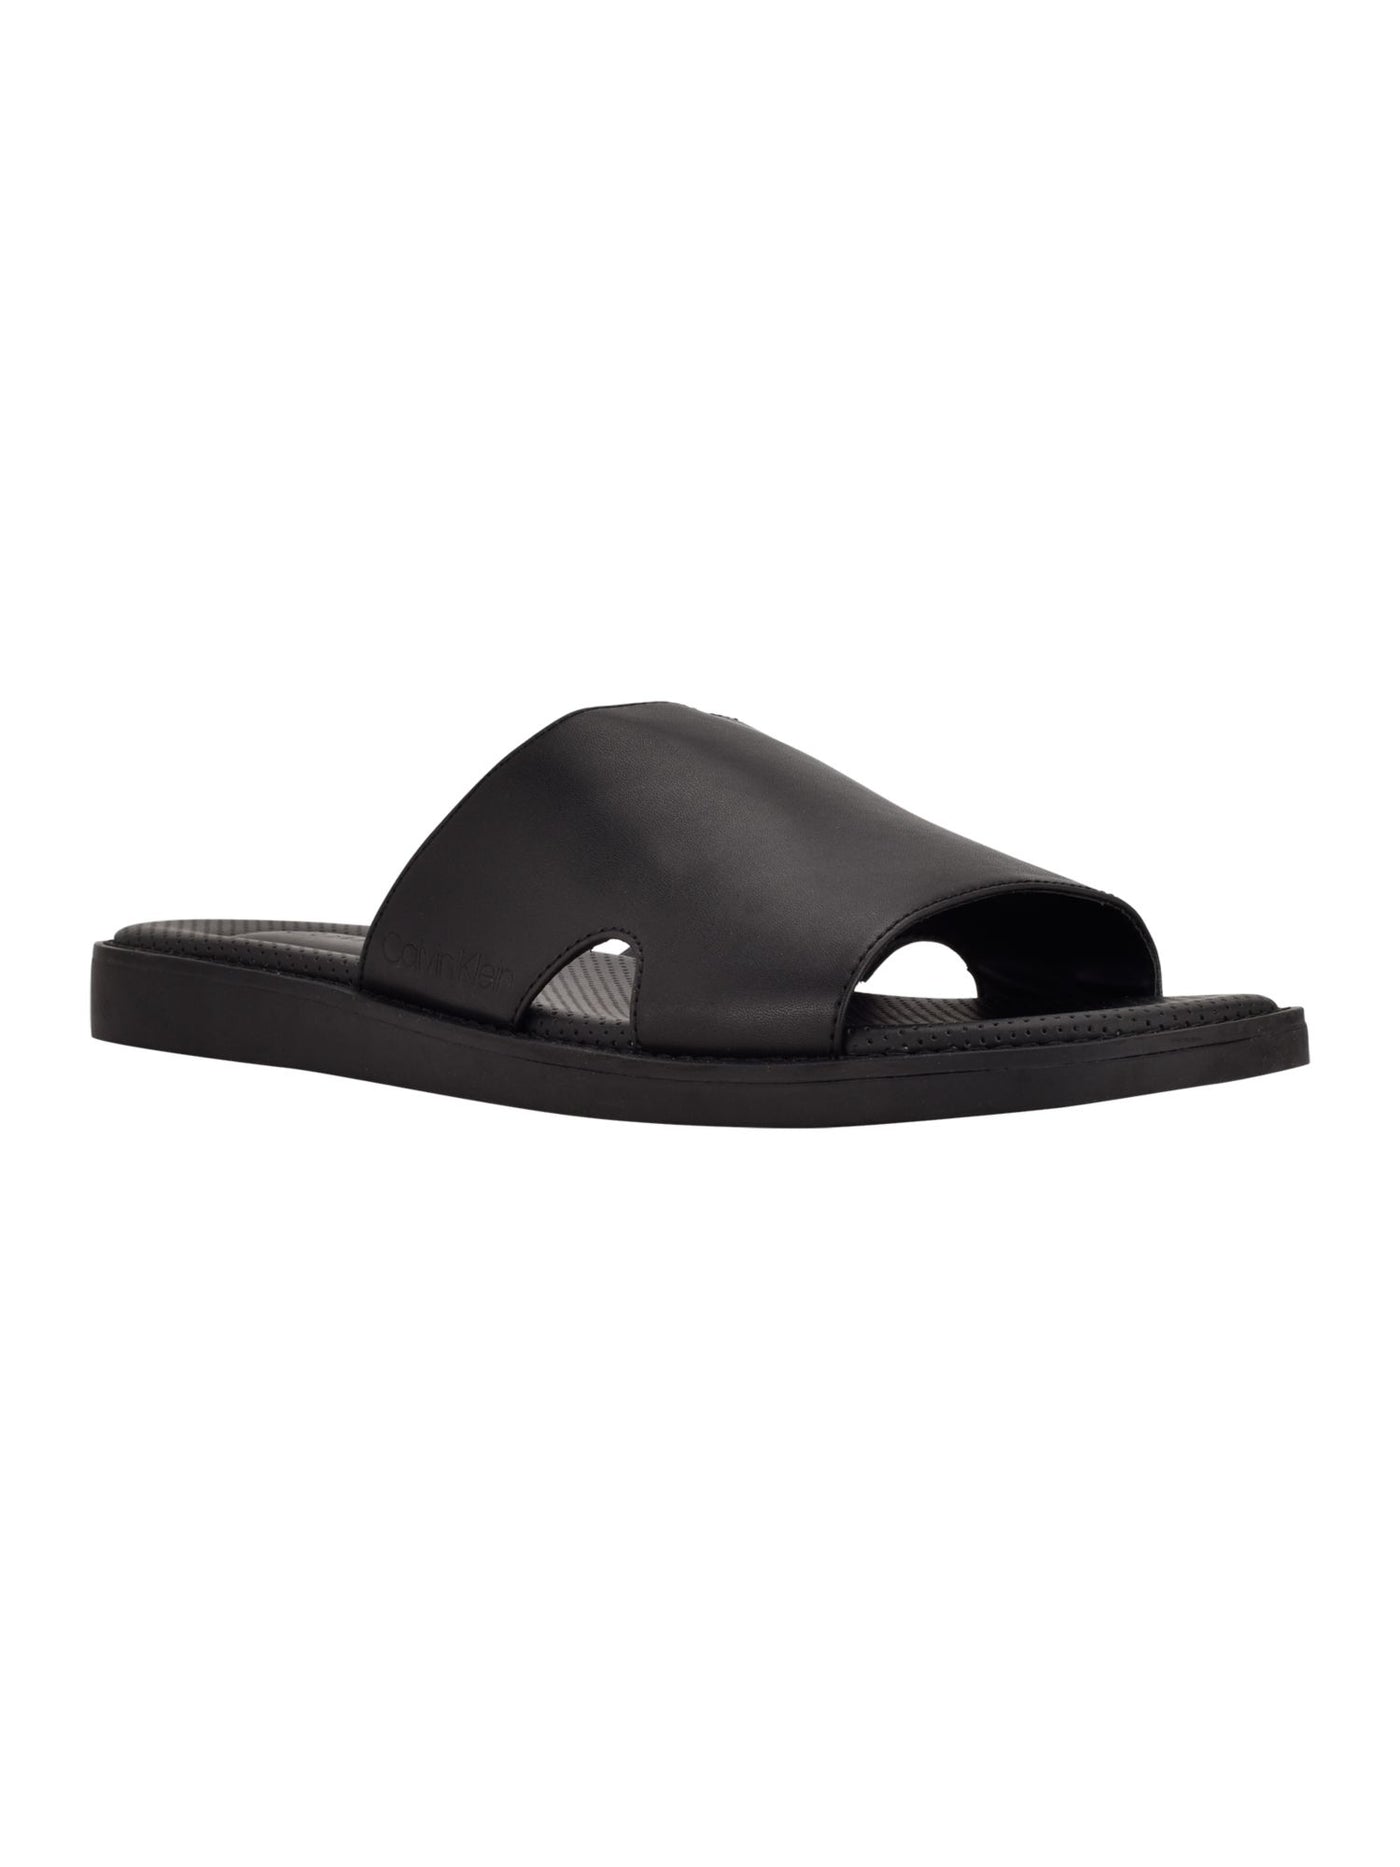 CALVIN KLEIN Mens Black Padded Goring Ethan Round Toe Wedge Slip On Slide Sandals Shoes 9.5